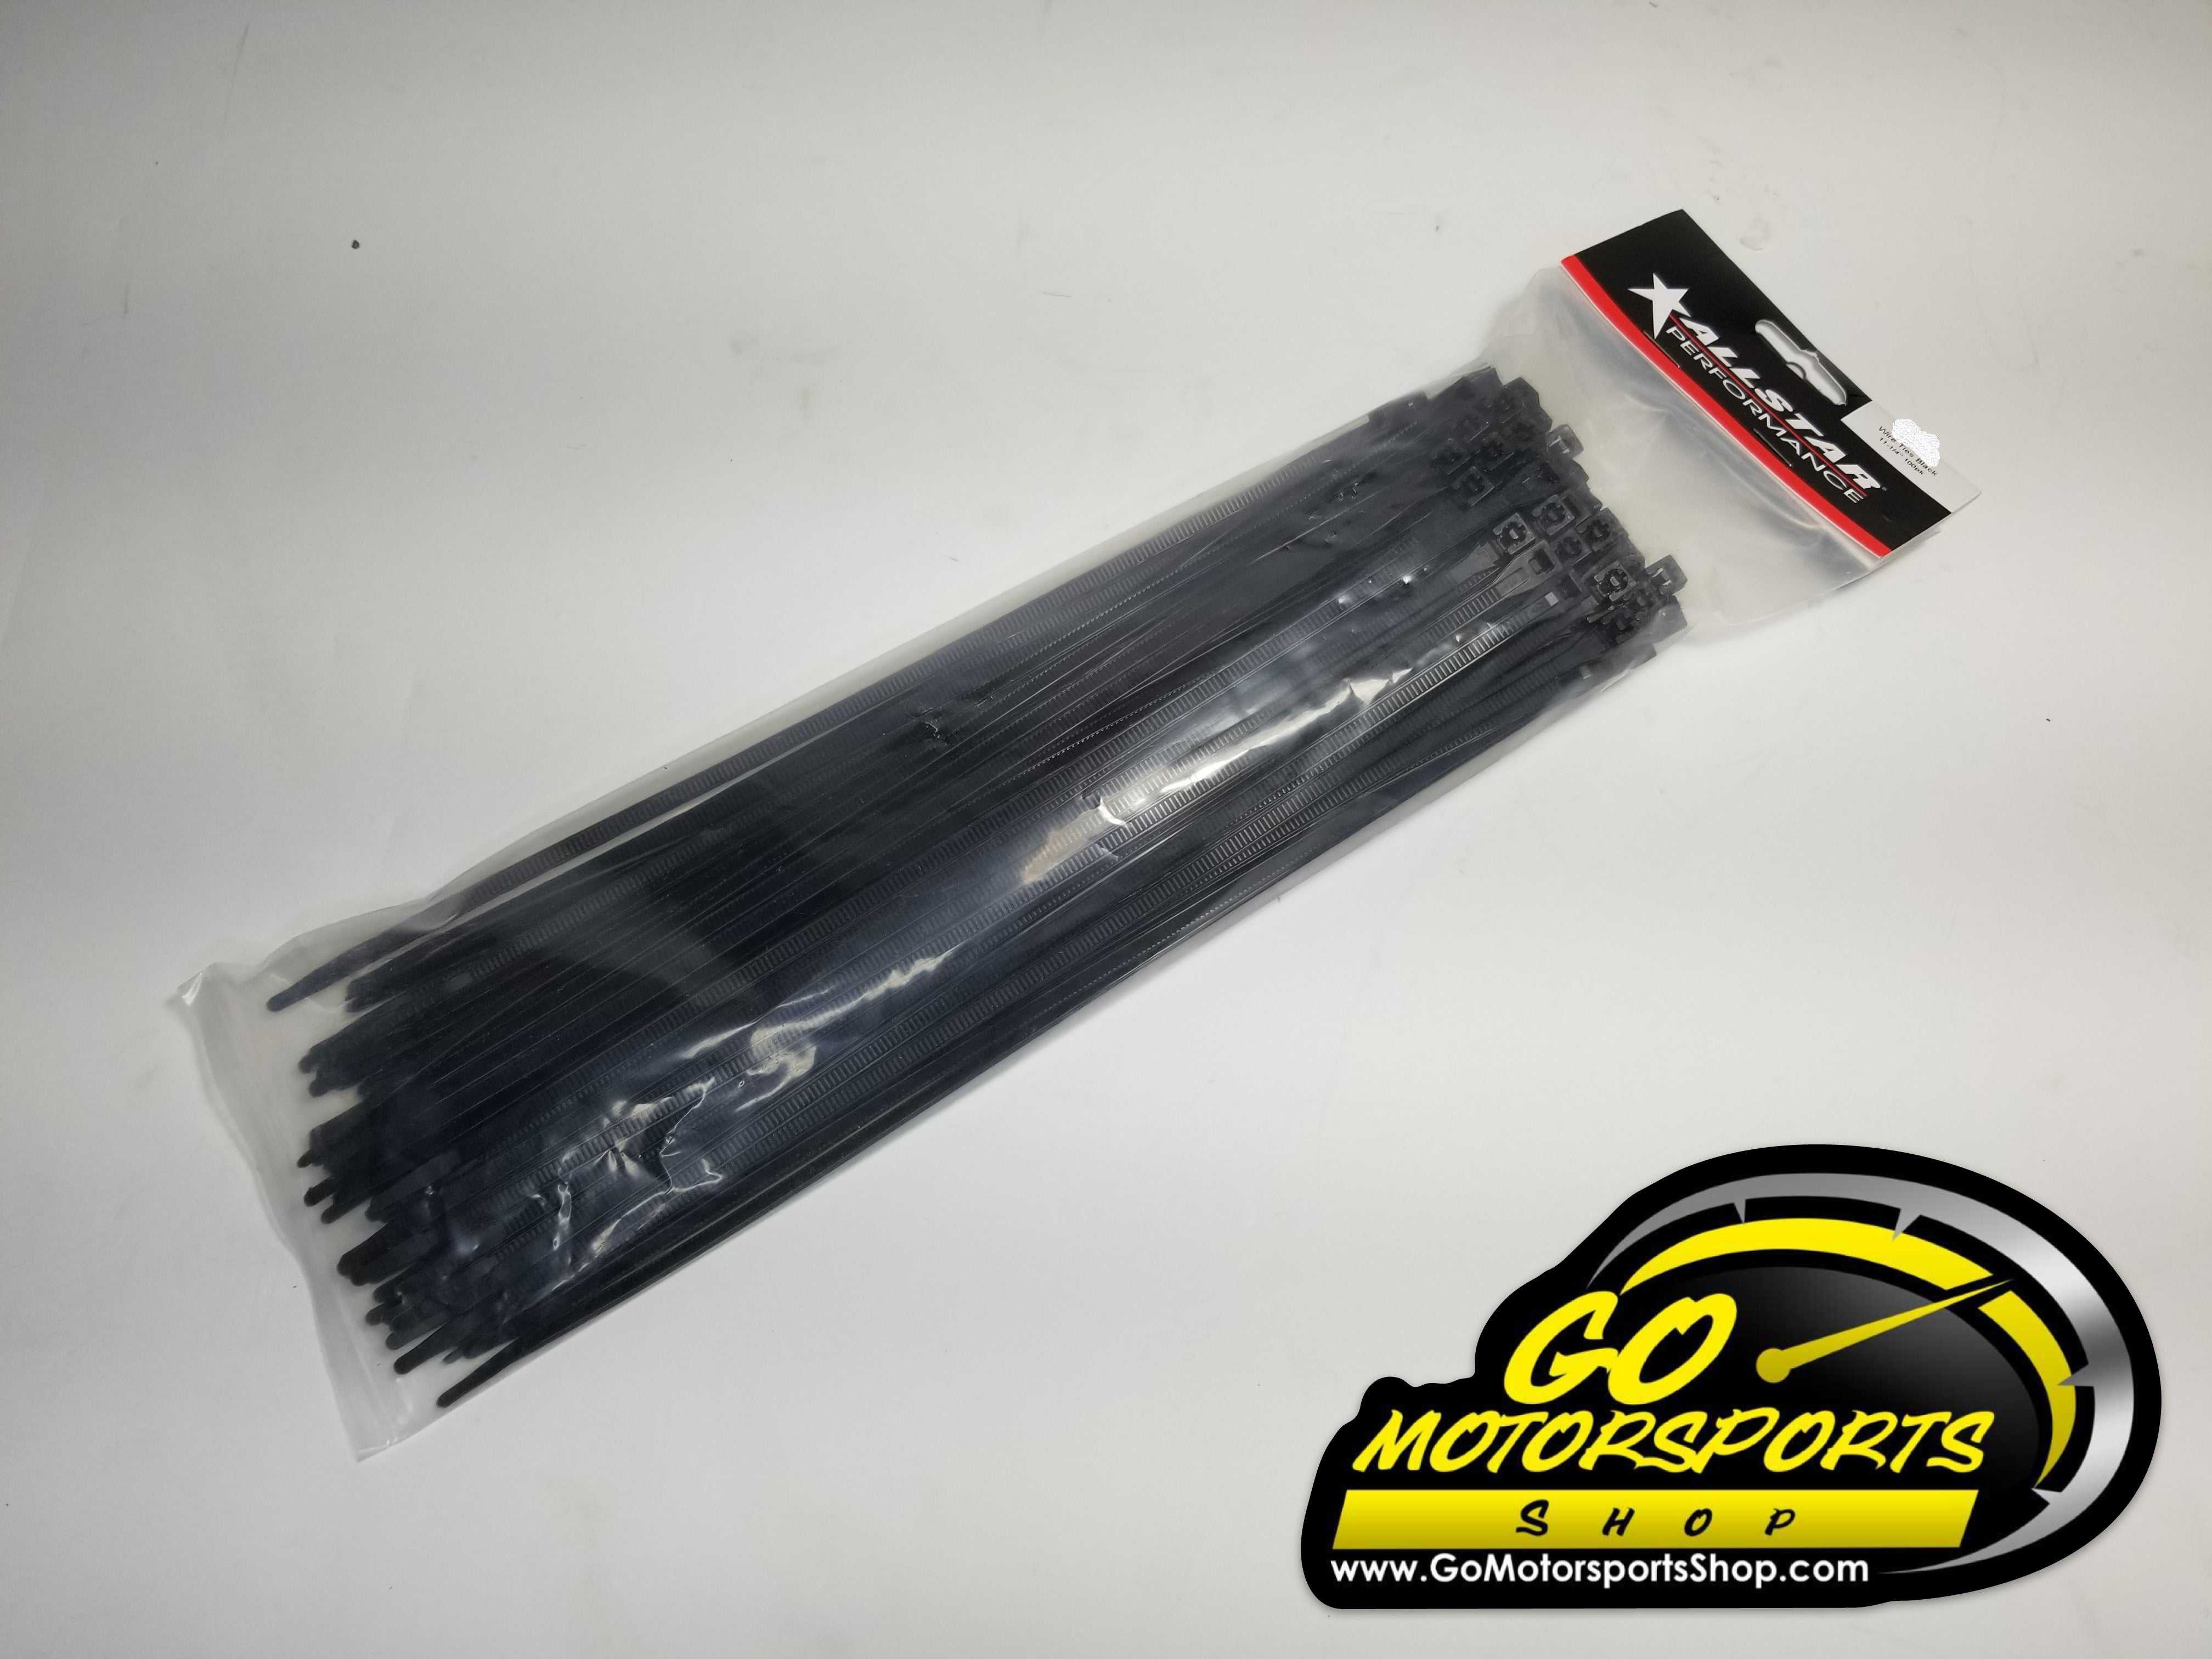 Motor State, Allstar 11-1/4” Black Wire Ties (100 Pack)